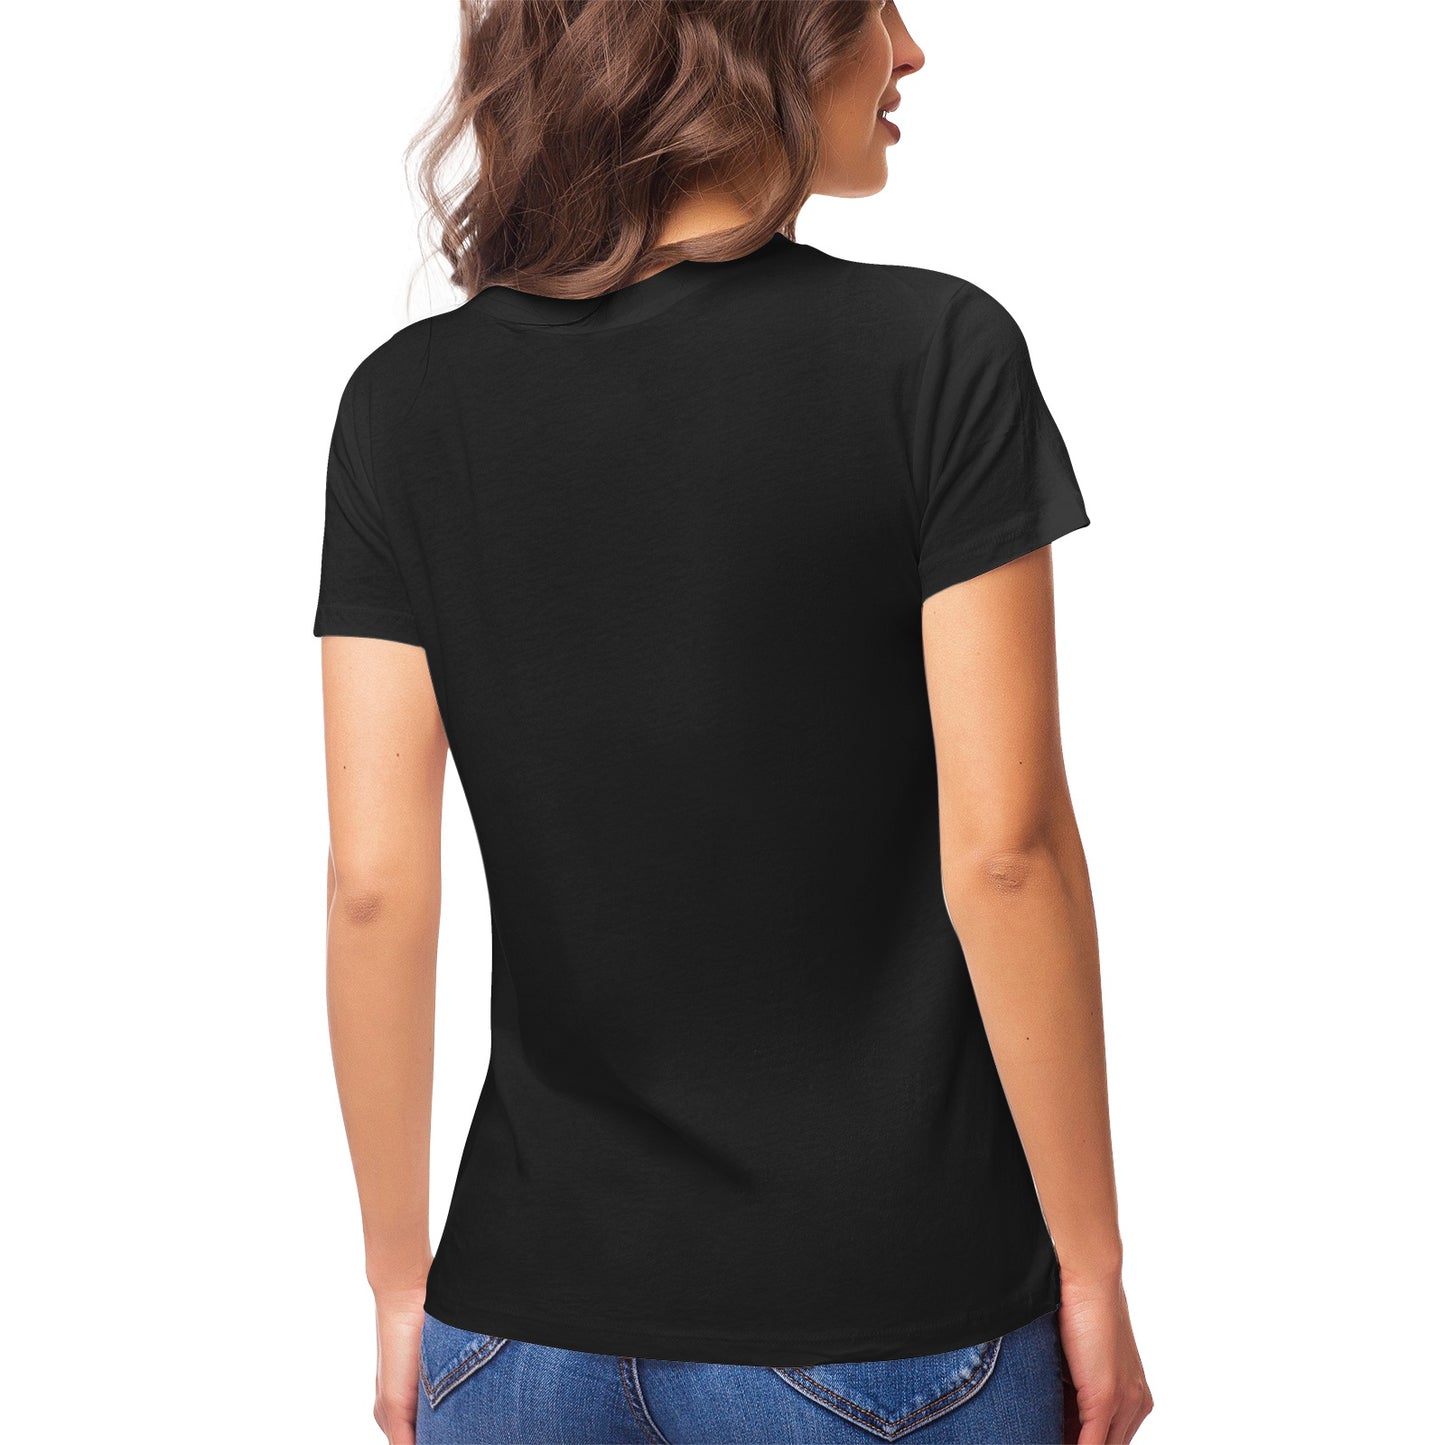 Fantasy 19 Women's Ultrasoft Pima Cotton T‑shirt - DromedarShop.com Online Boutique